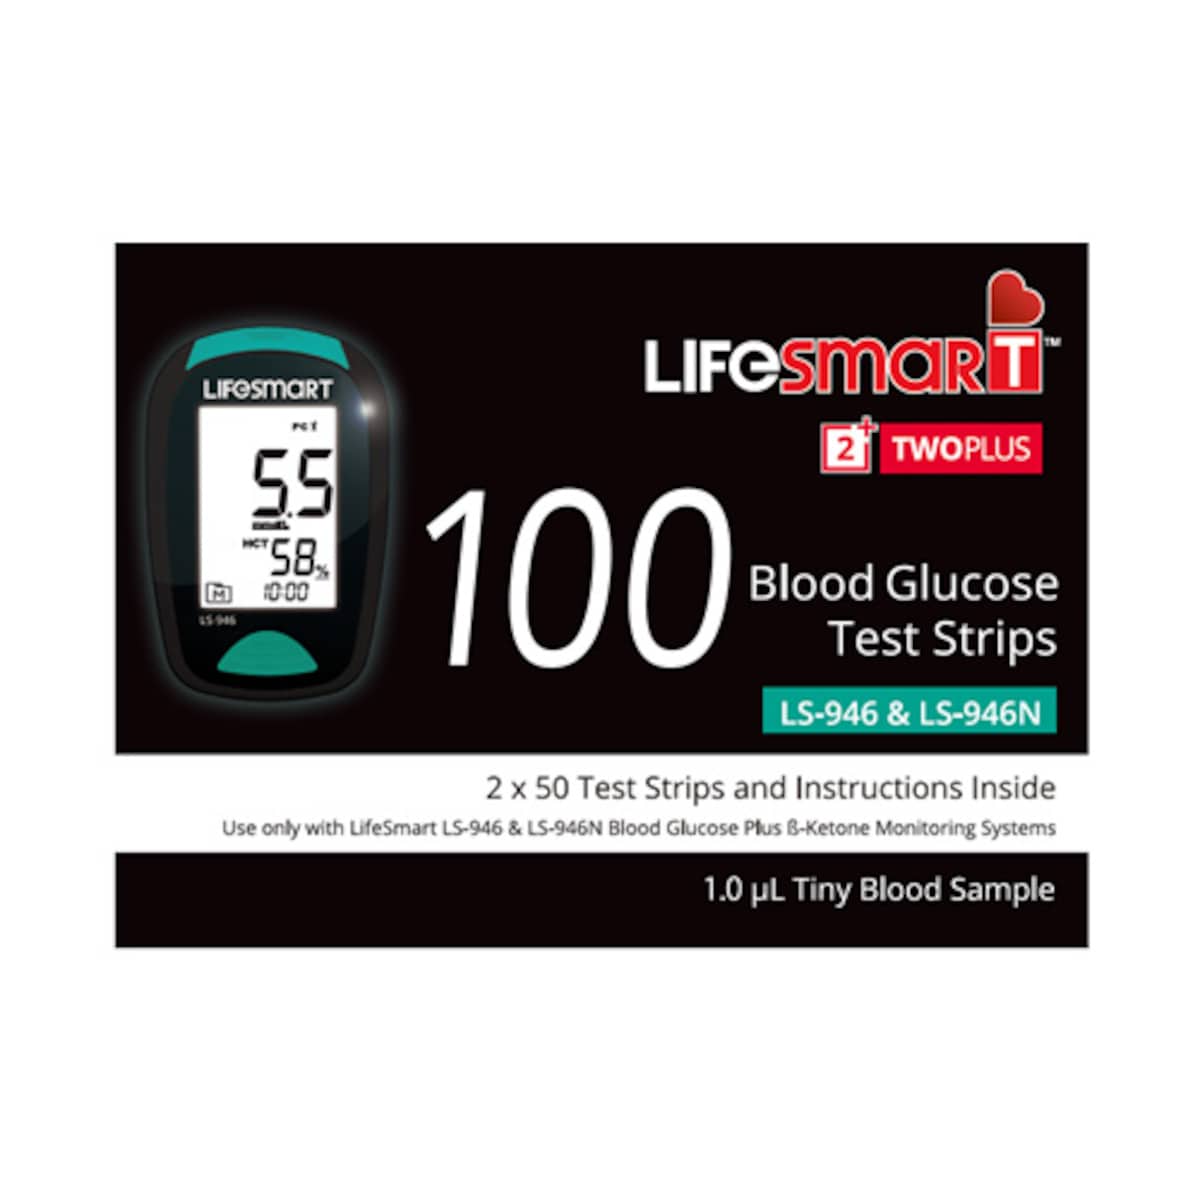 LifeSmart TwoPlus Blood Glucose Test Strips 2 x 50 Strips